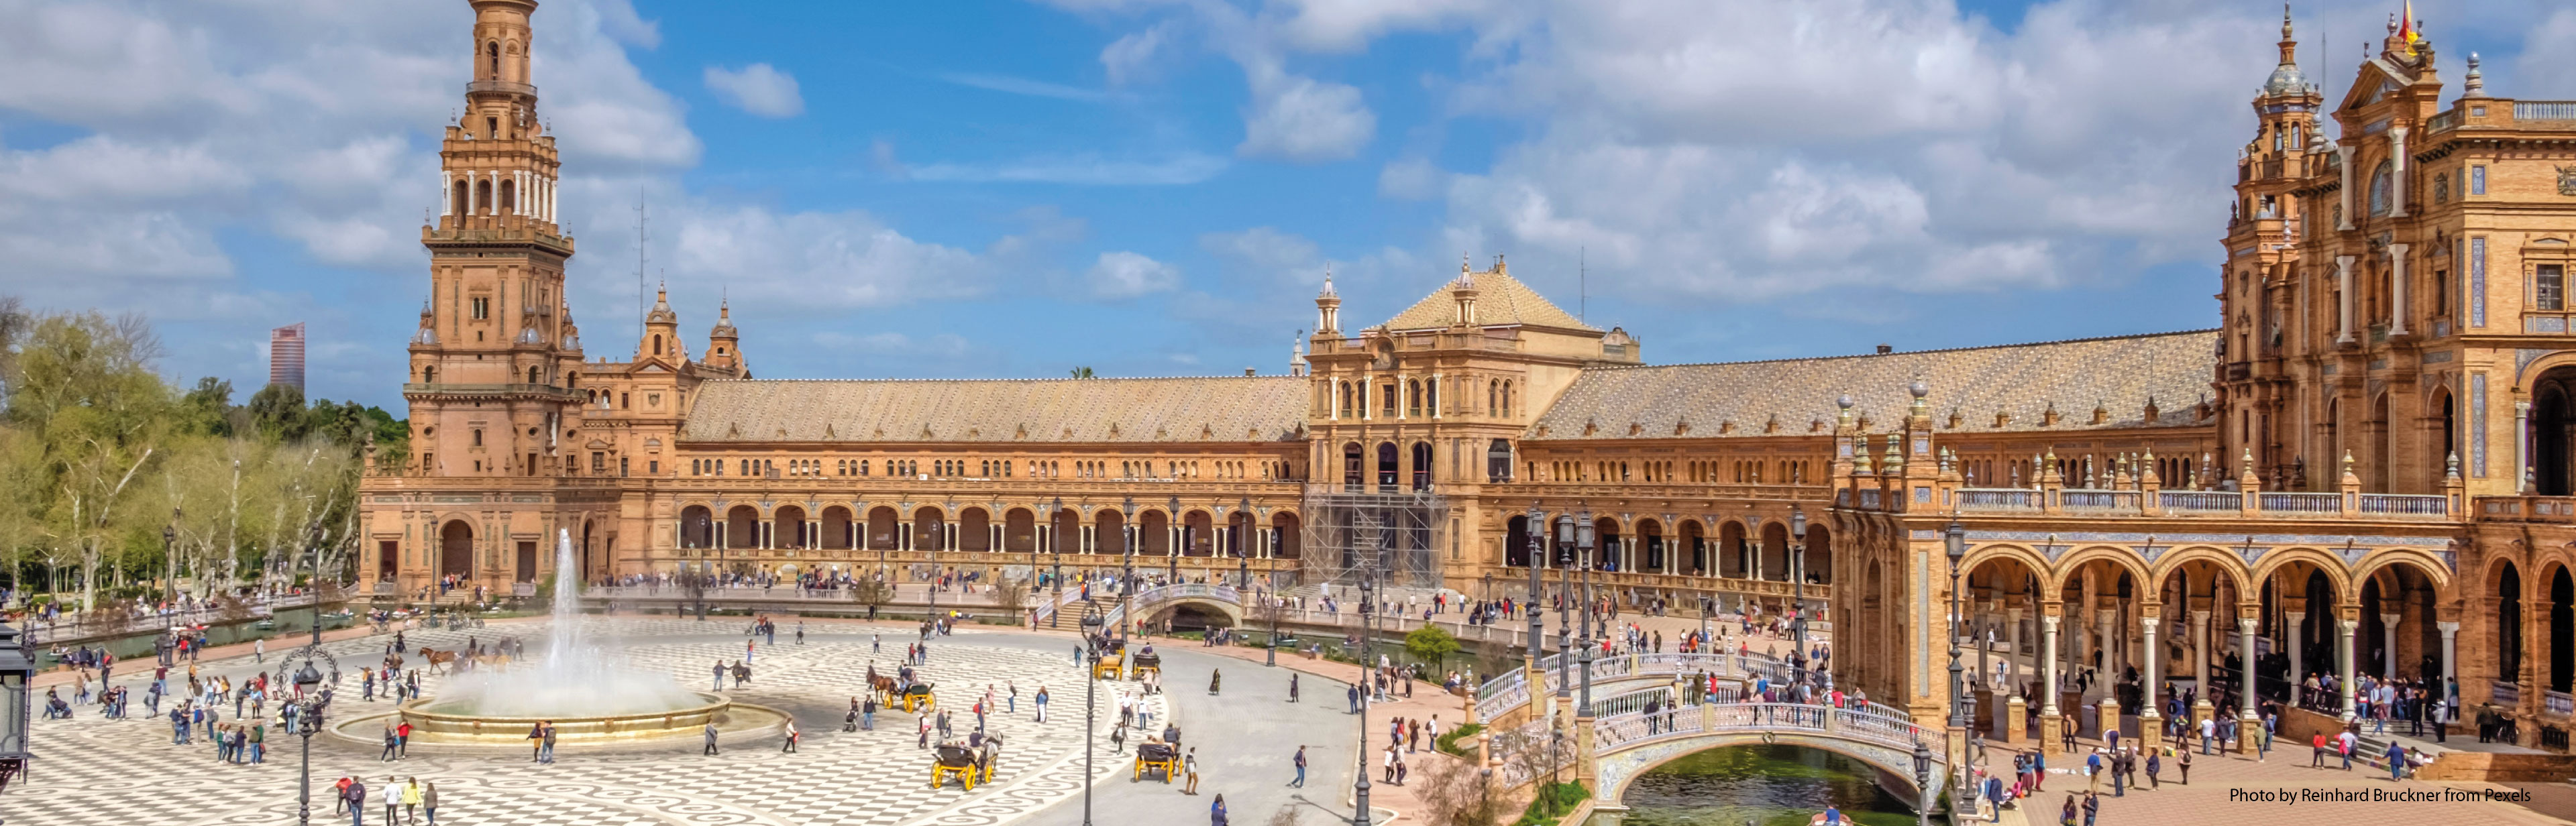 Het koninklijk paleis van Sevilla is een ommuurd paleizencomplex, op 2 uur  25 min